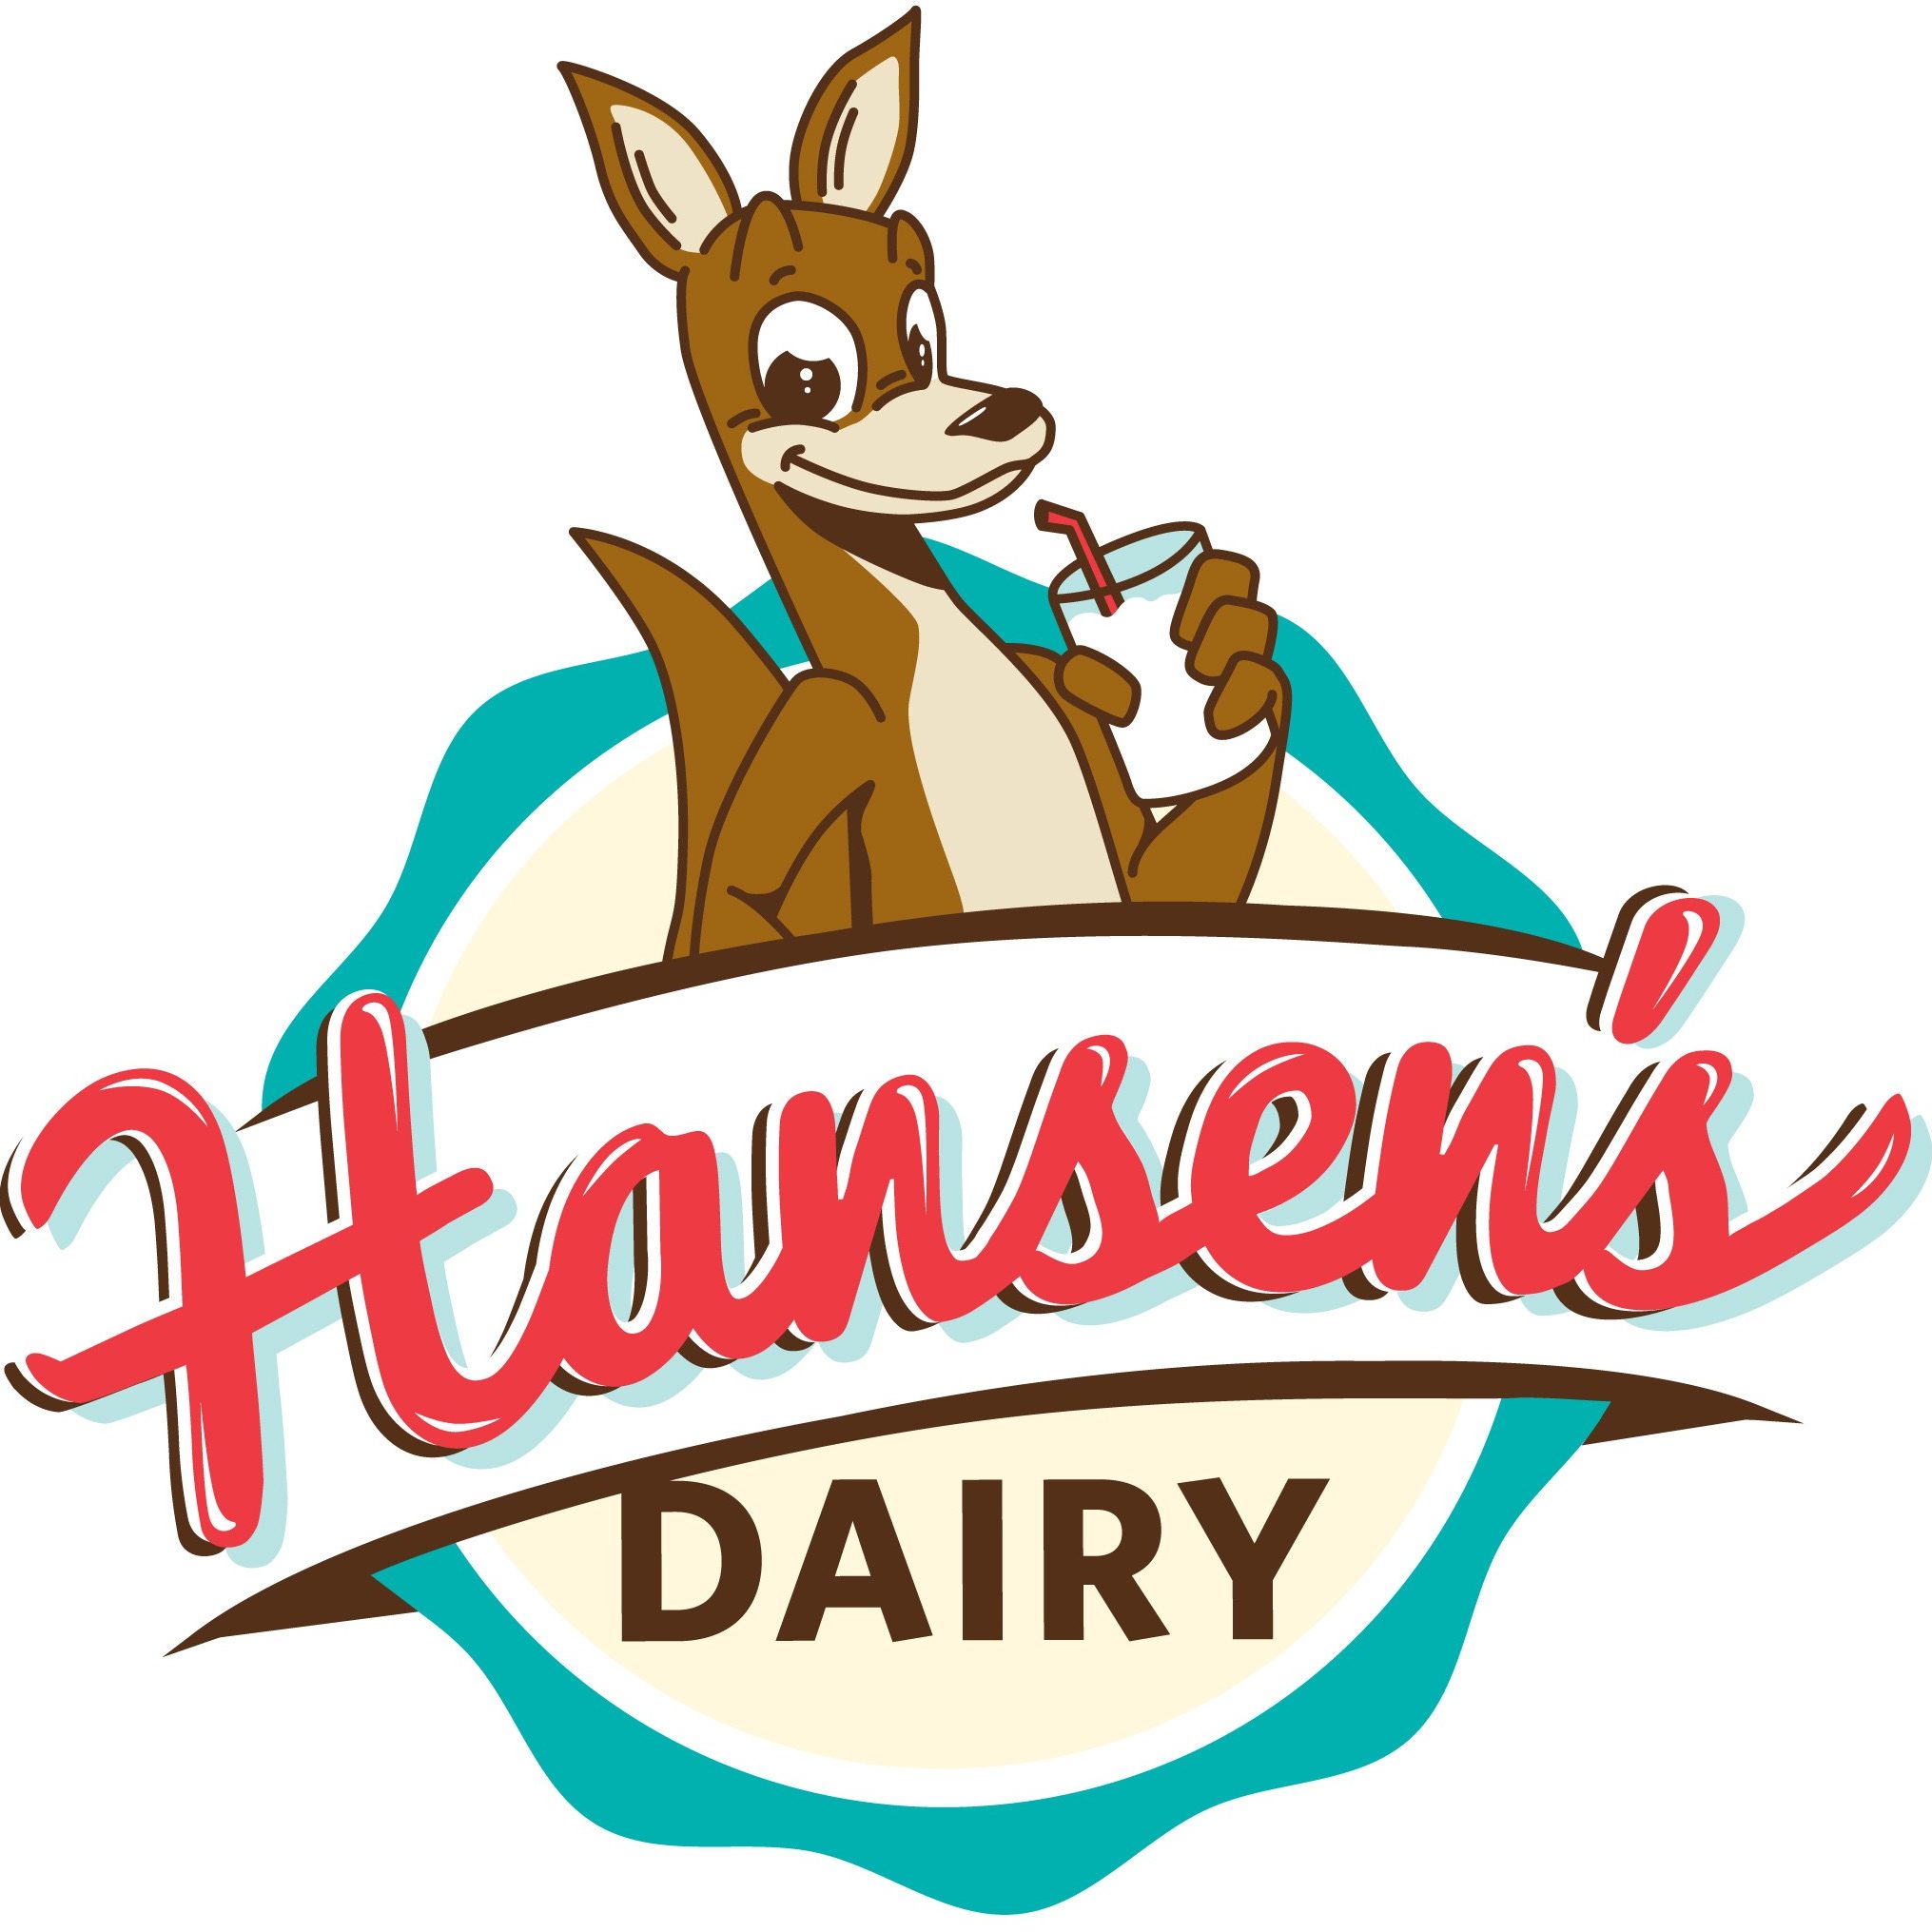 Hansen's Dairy